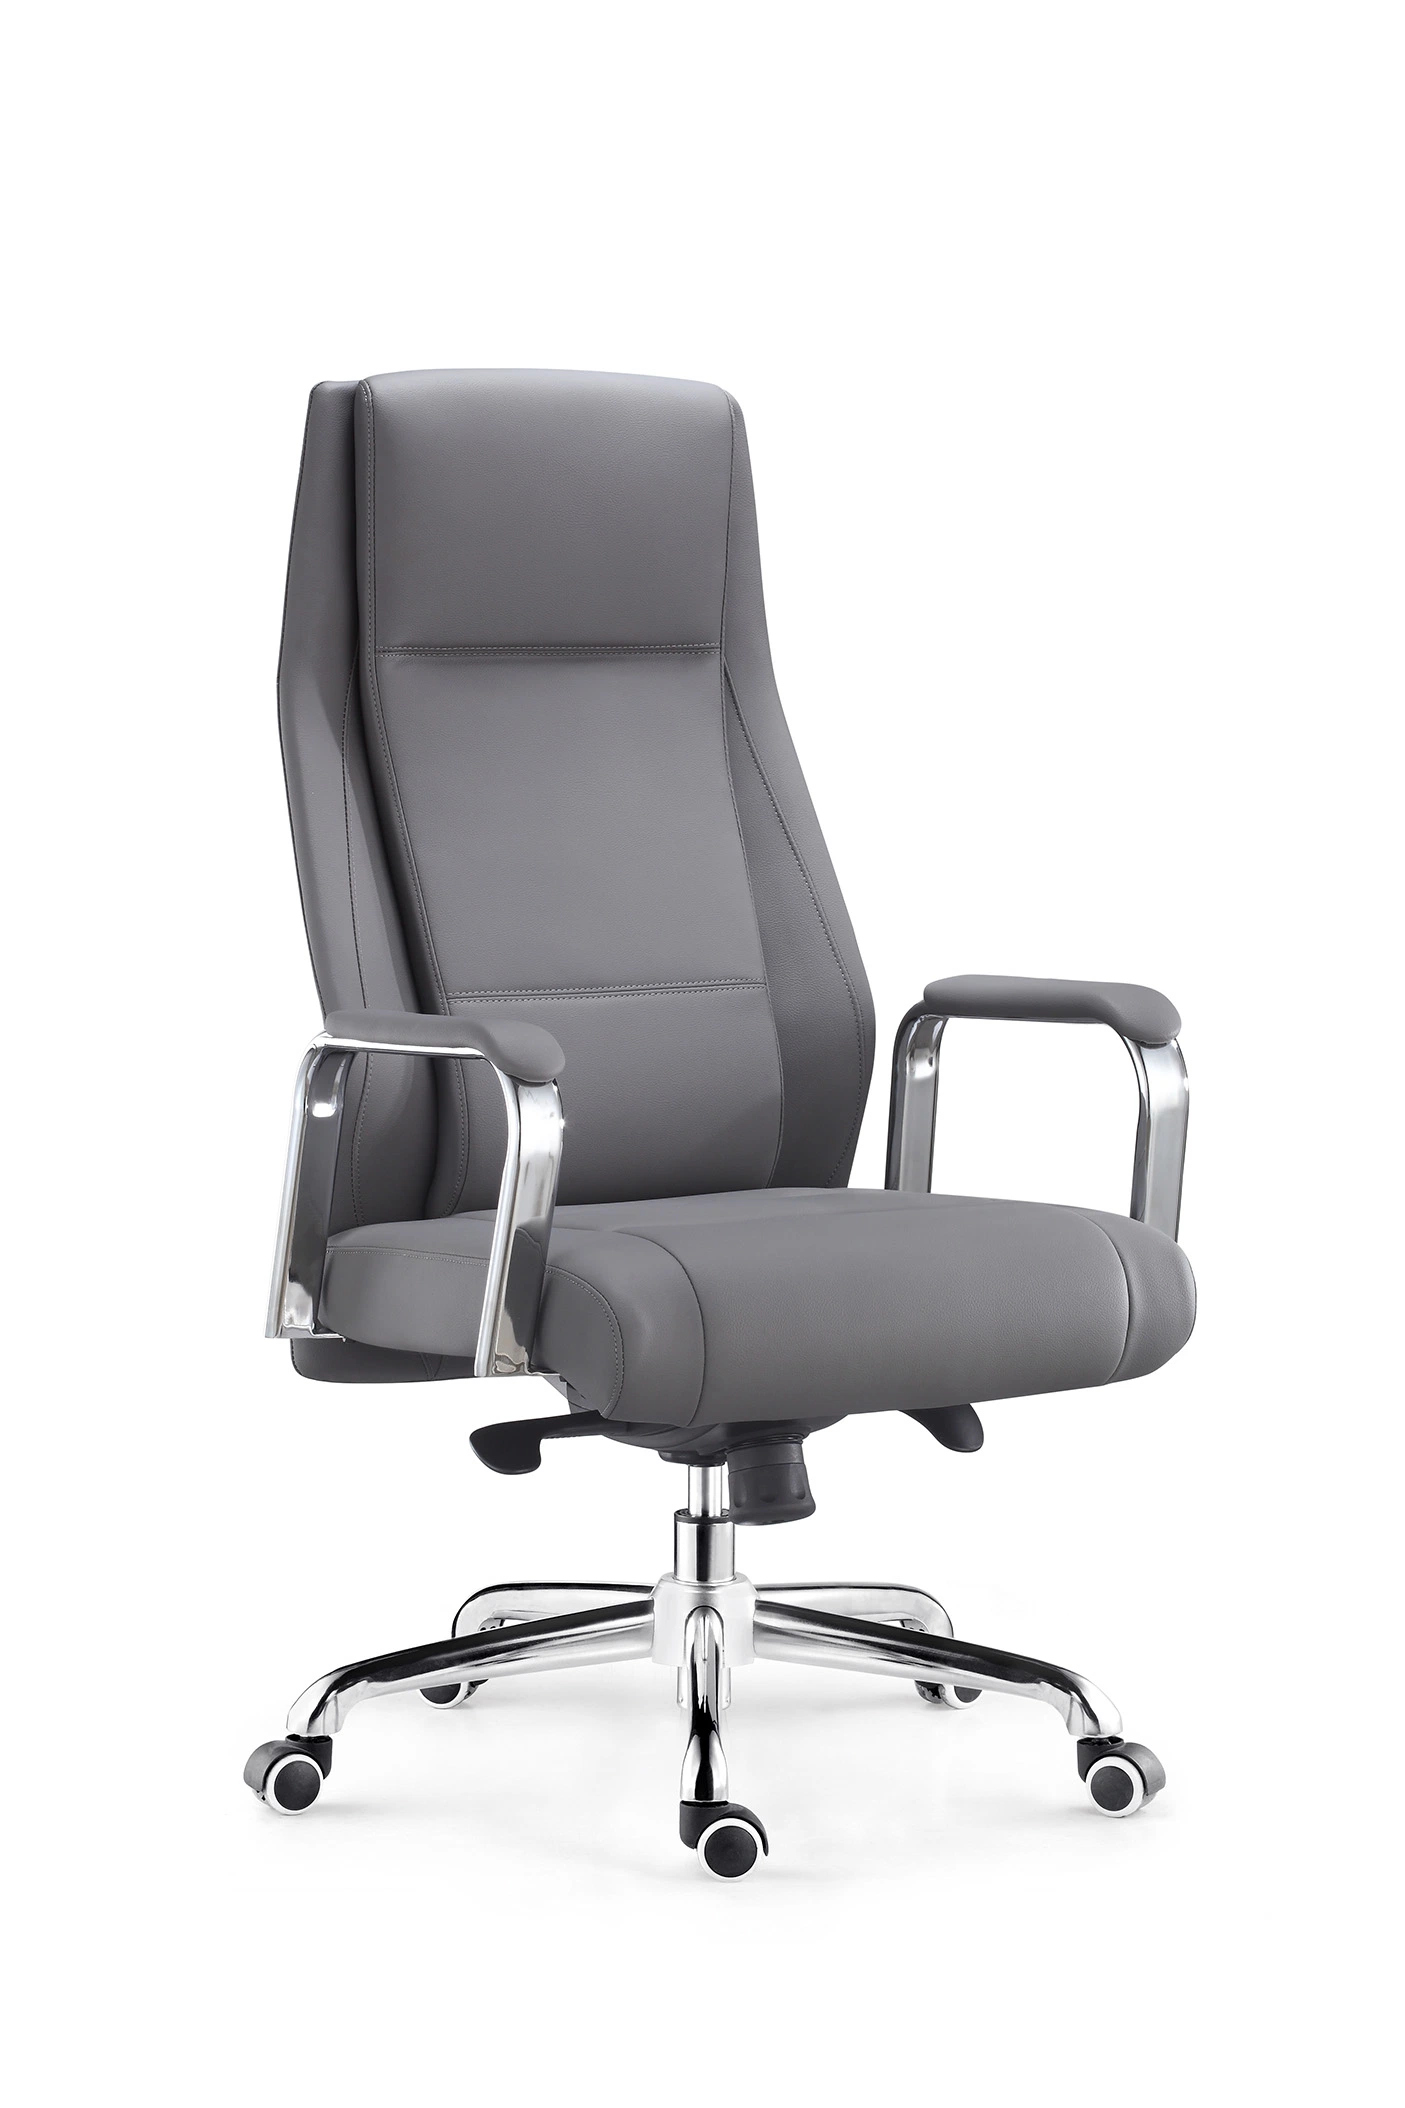 Vente à chaud mobilier de bureau chaise pivotante grise à haut dossier Pour Manager